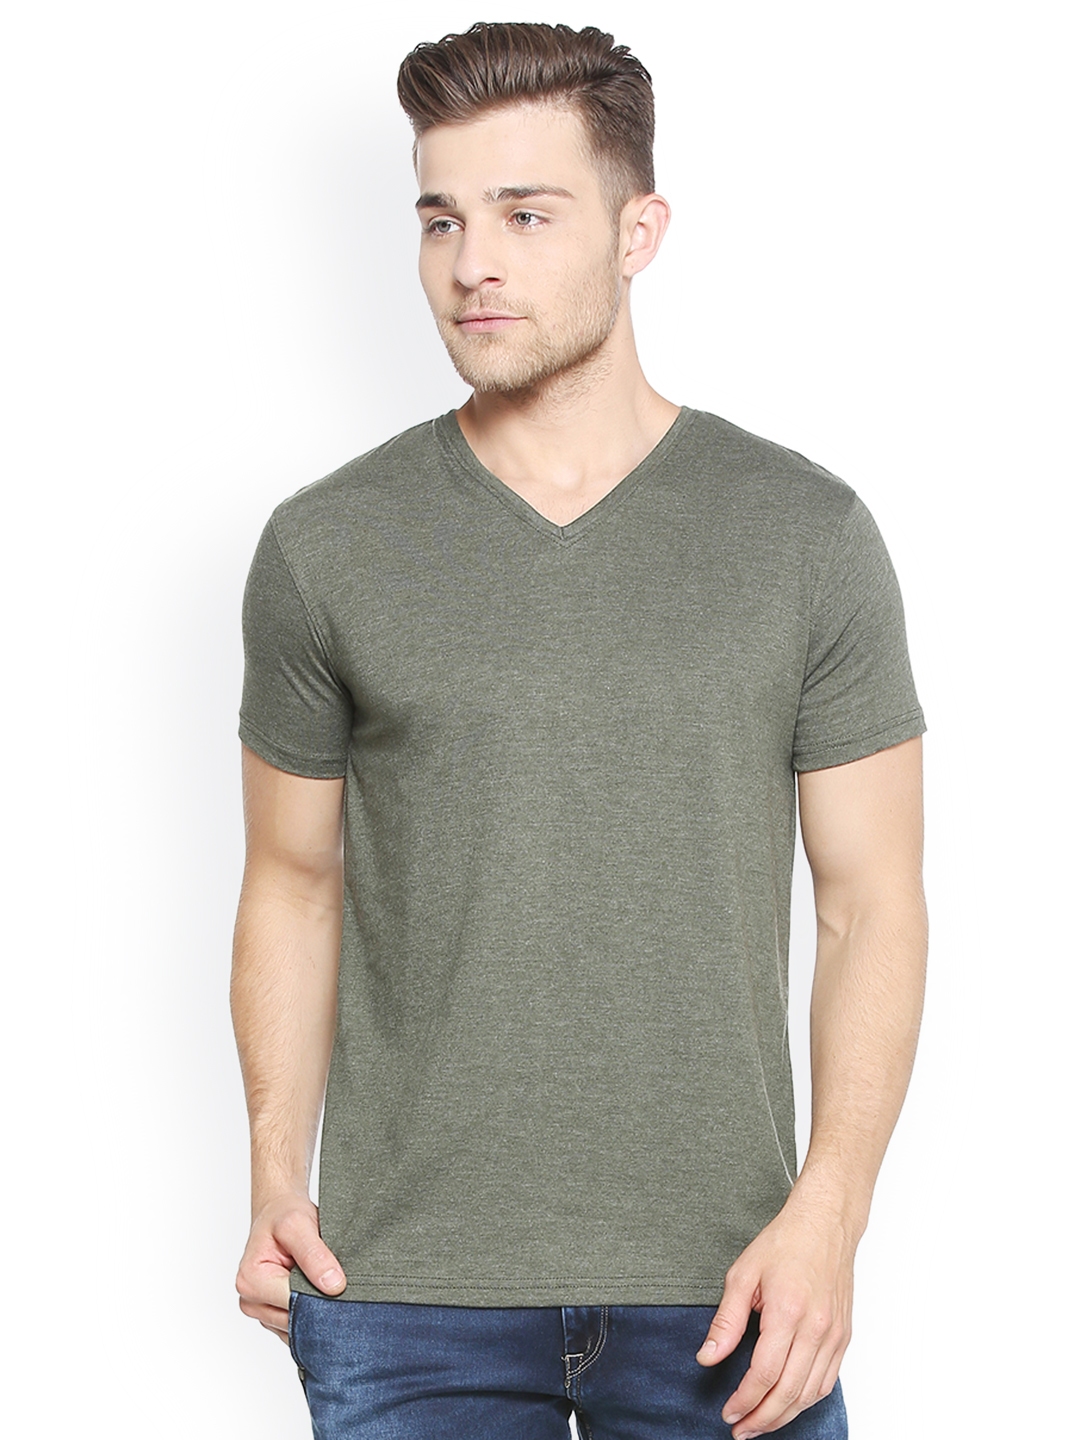 Buy People Men Olive Green Solid V Neck T Shirt - Tshirts for Men ...